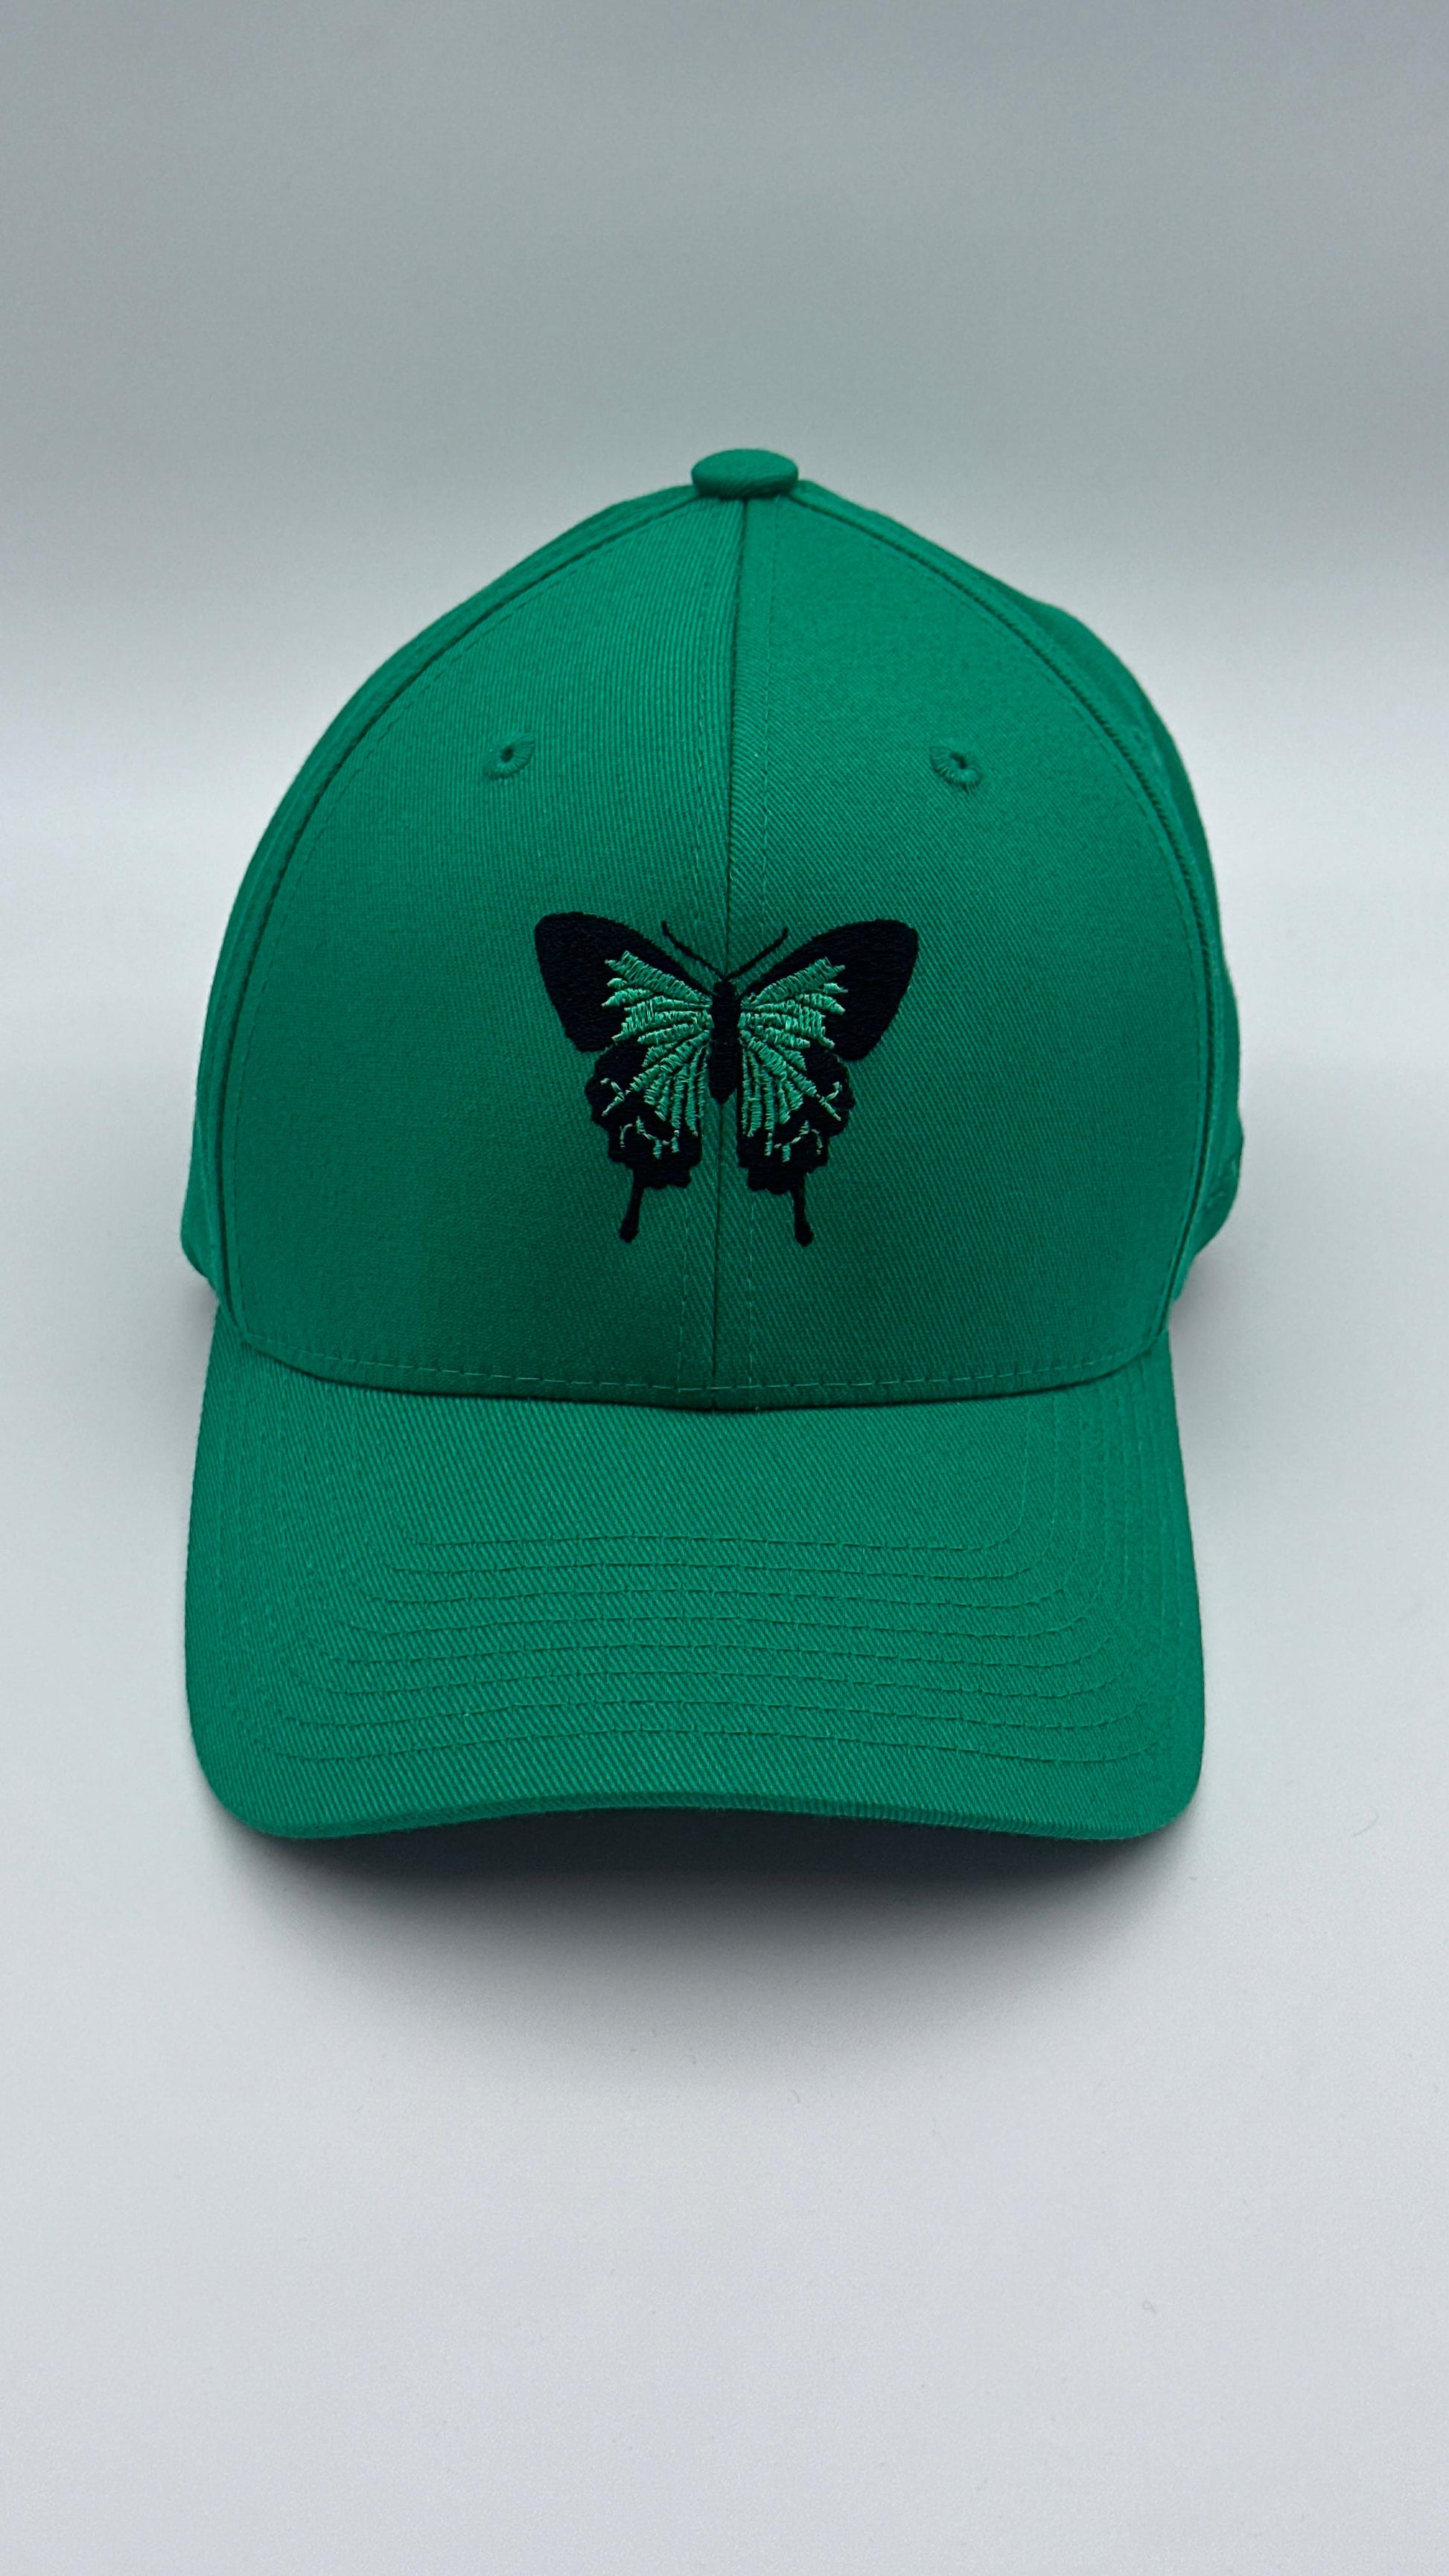 Butterfly Cap “Green on Green” - Butterfly Sneakers